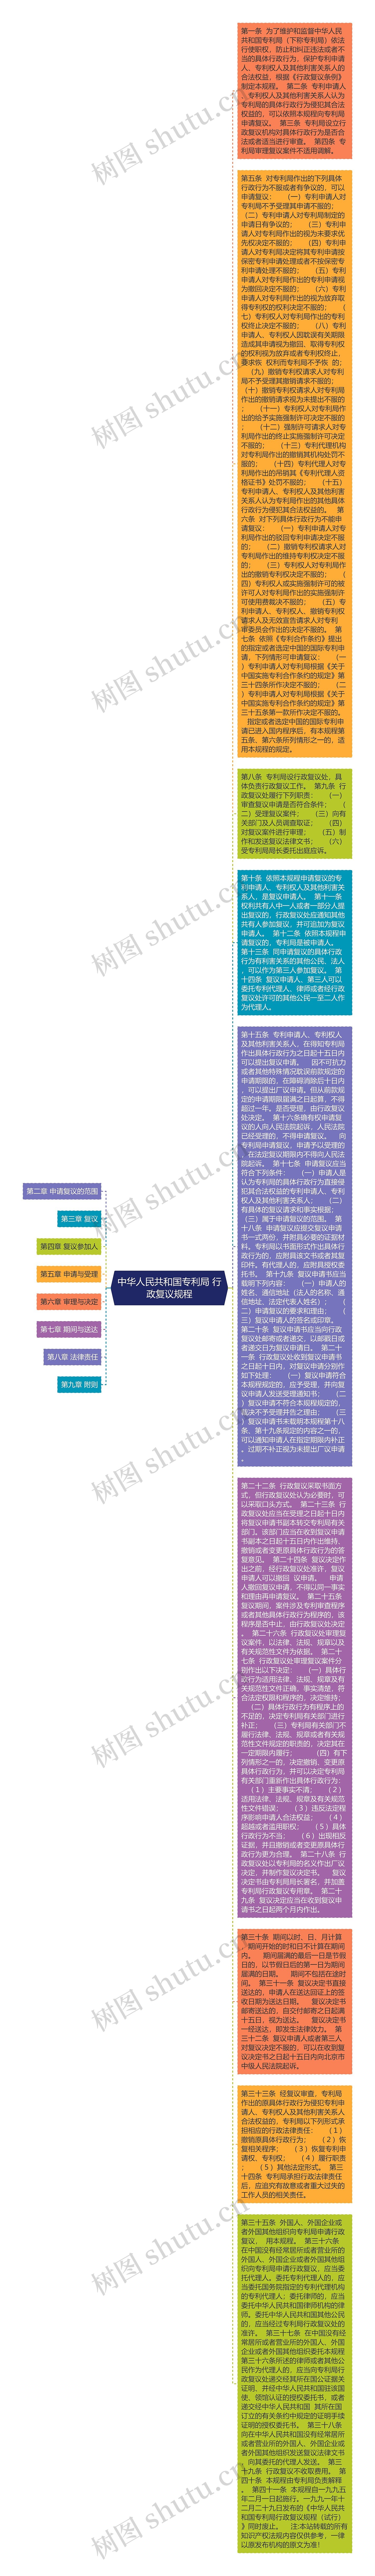 中华人民共和国专利局 行政复议规程